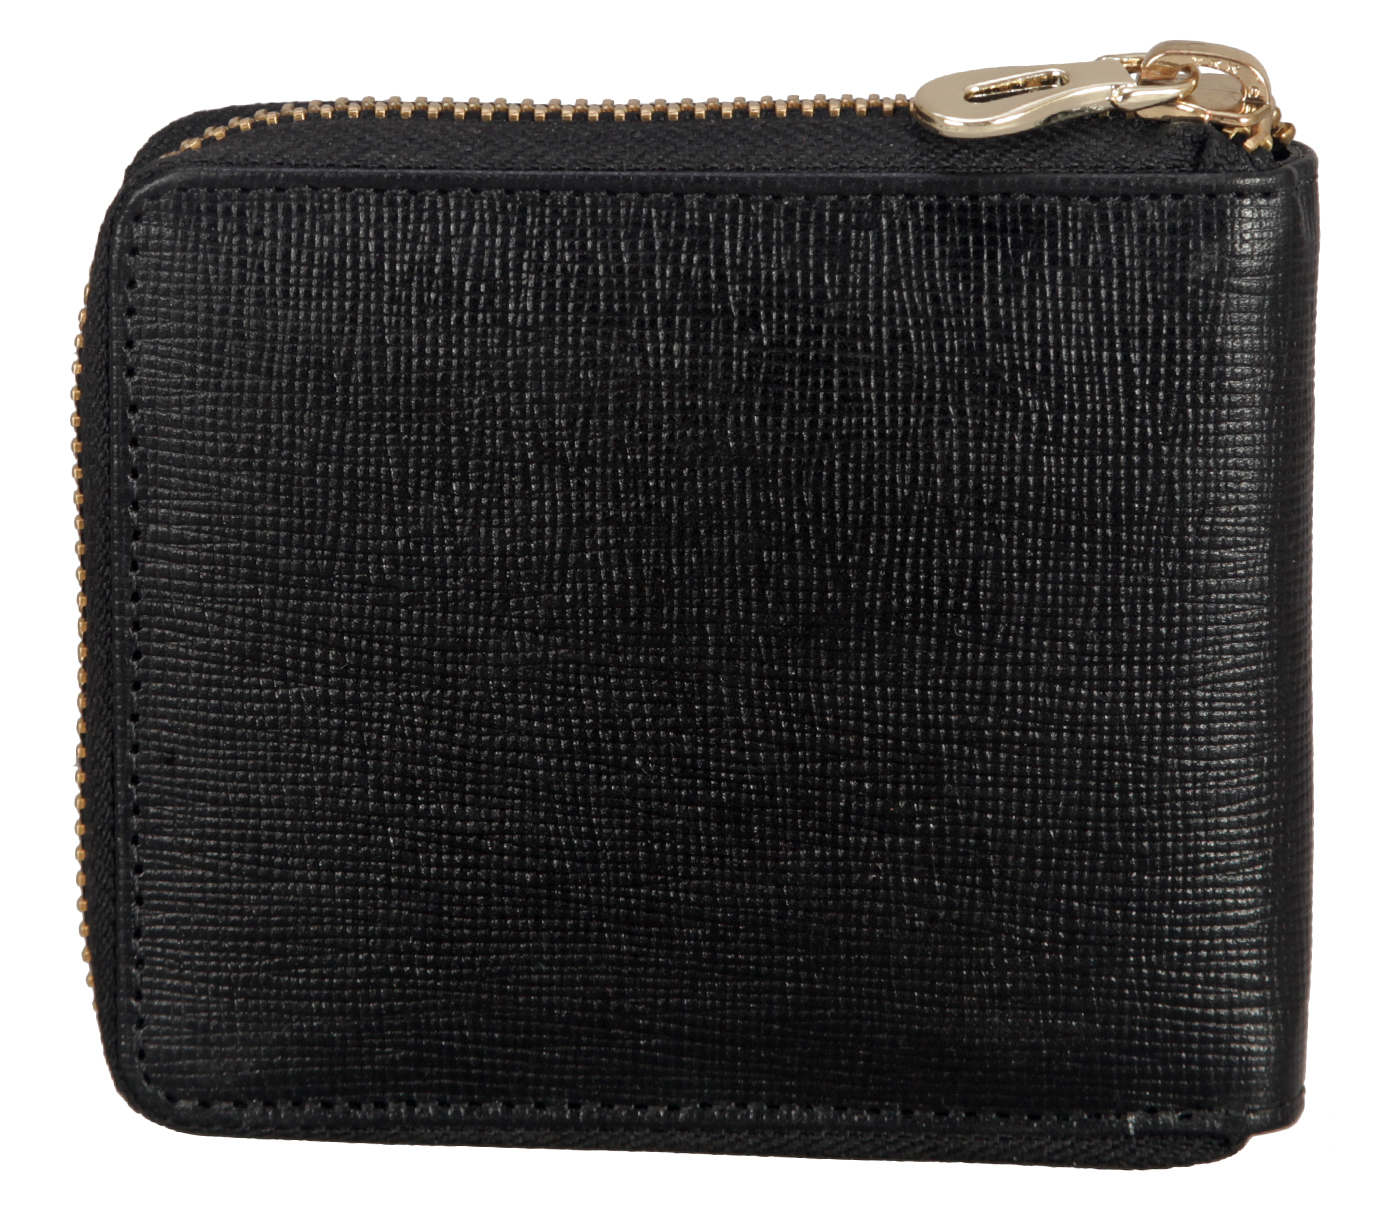 W325-Denzel-Men's bifold zip wallet in Genuine Leather - Black